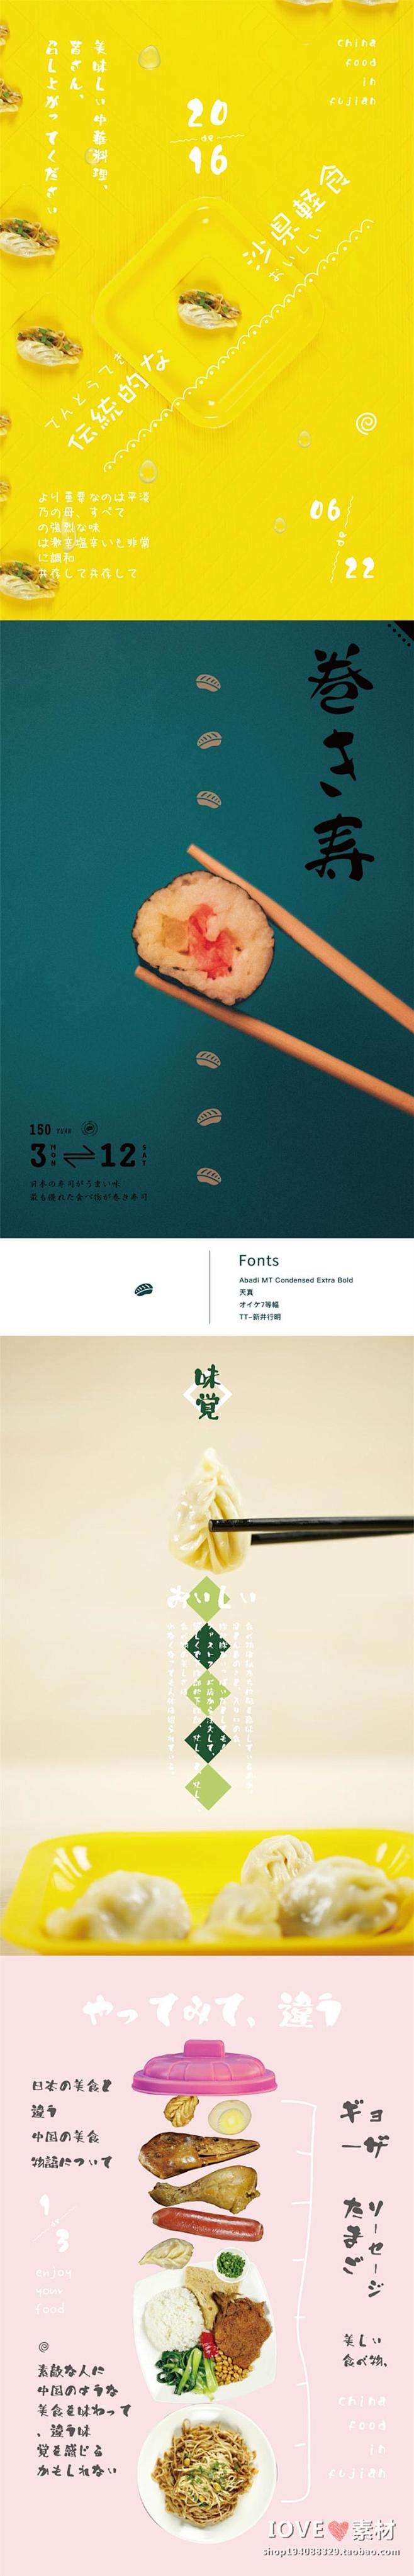 文艺日系杂志风格小清新美食食物海报文字排版矢量图设计素材i170淘宝